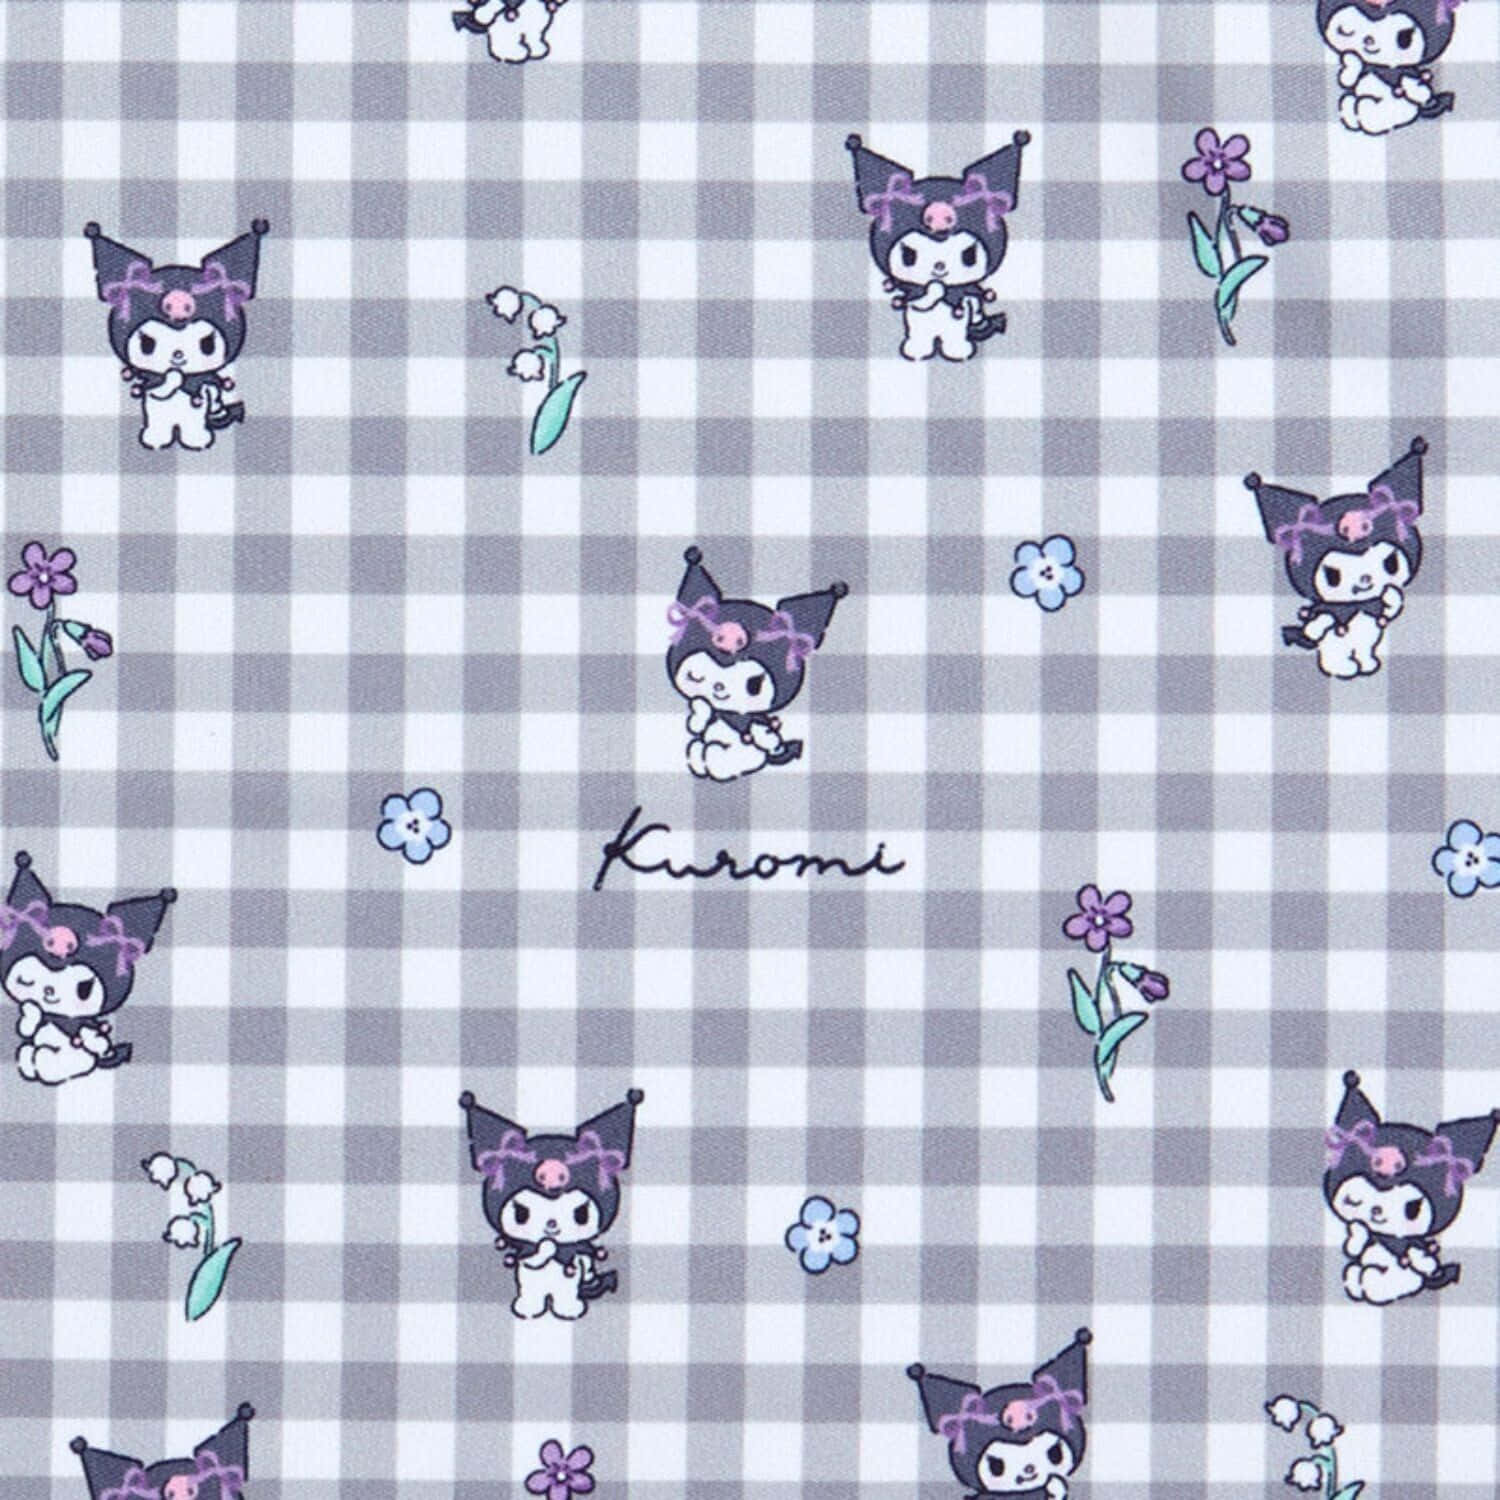 Caption: Adorable Kuromi Pattern Wallpaper Wallpaper